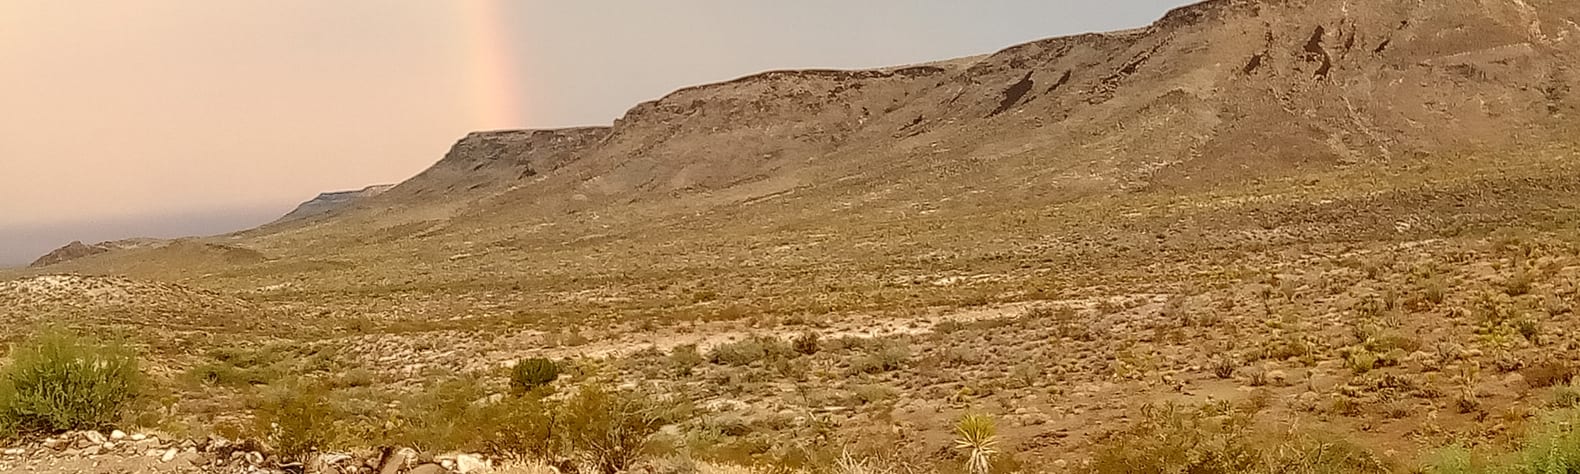 Desert flats ranch